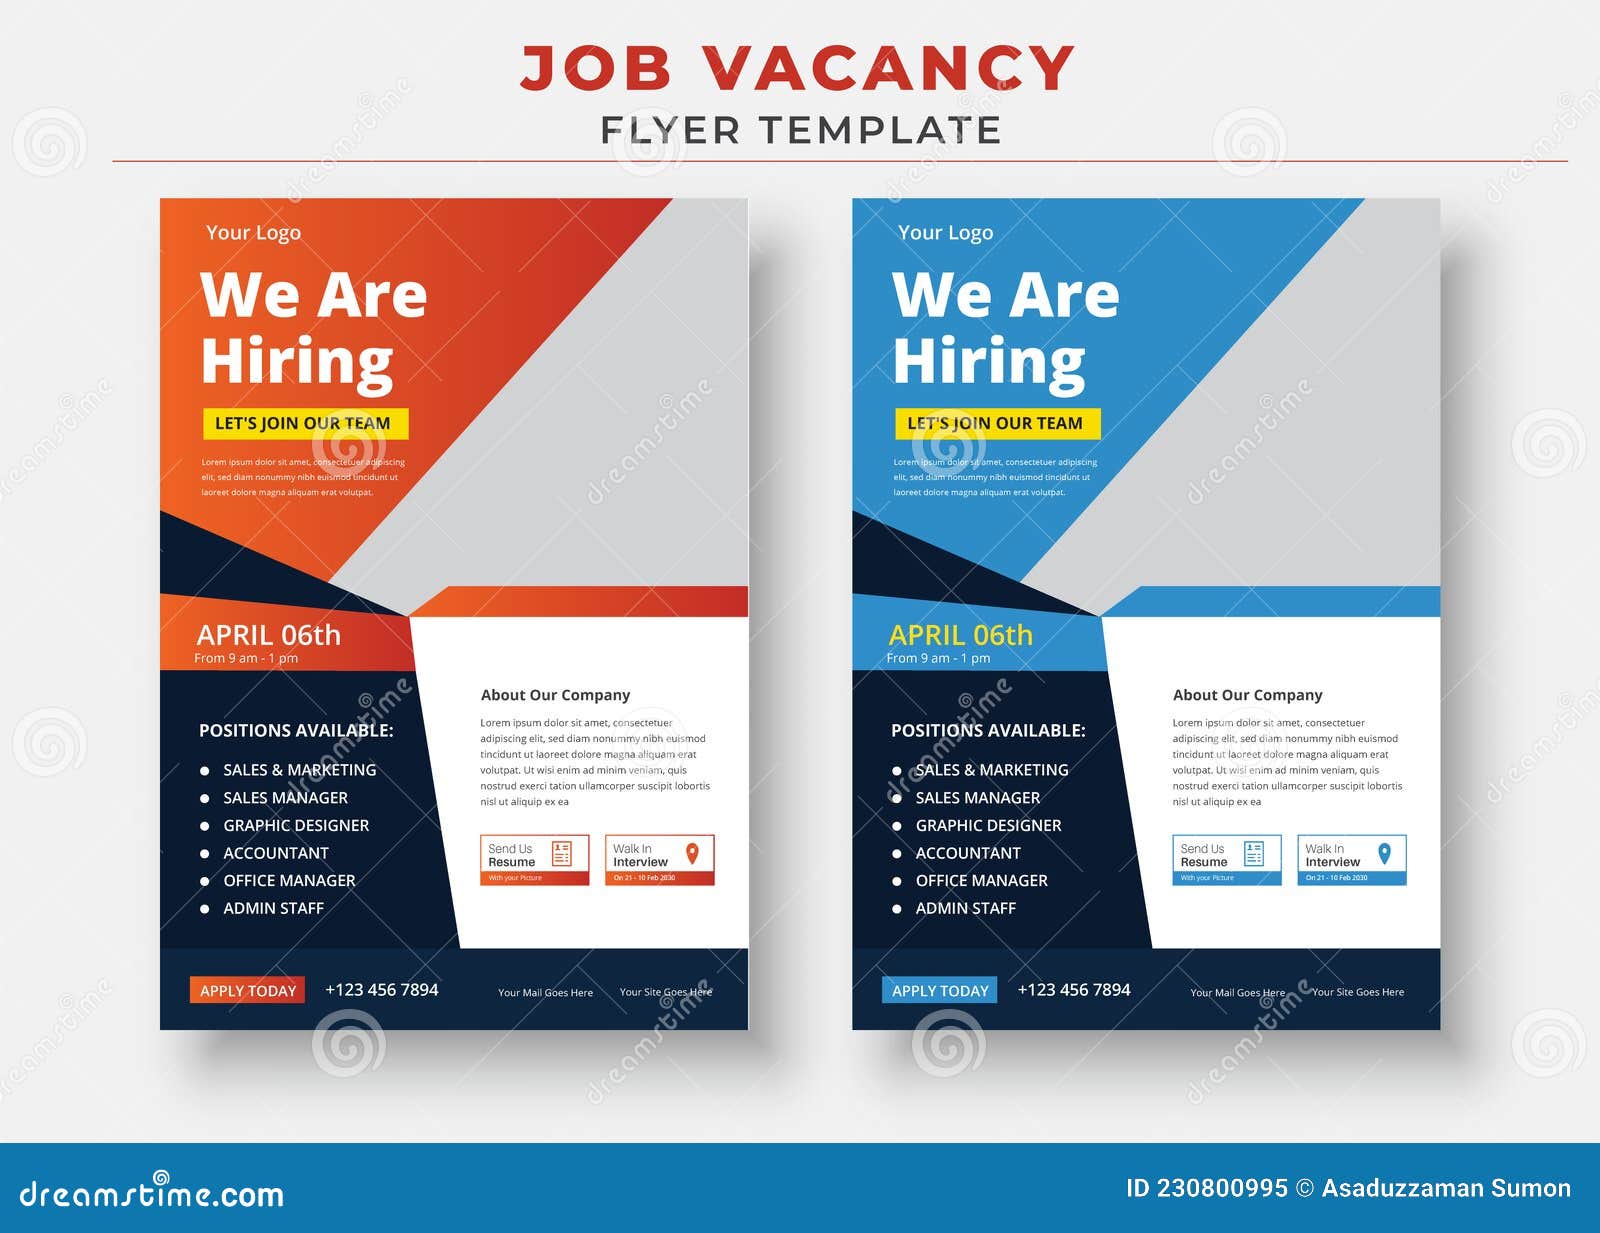 Job Vacancy Flyer Template, we are Hiring Job Flyer Template Stock Pertaining To Hiring Flyer Template